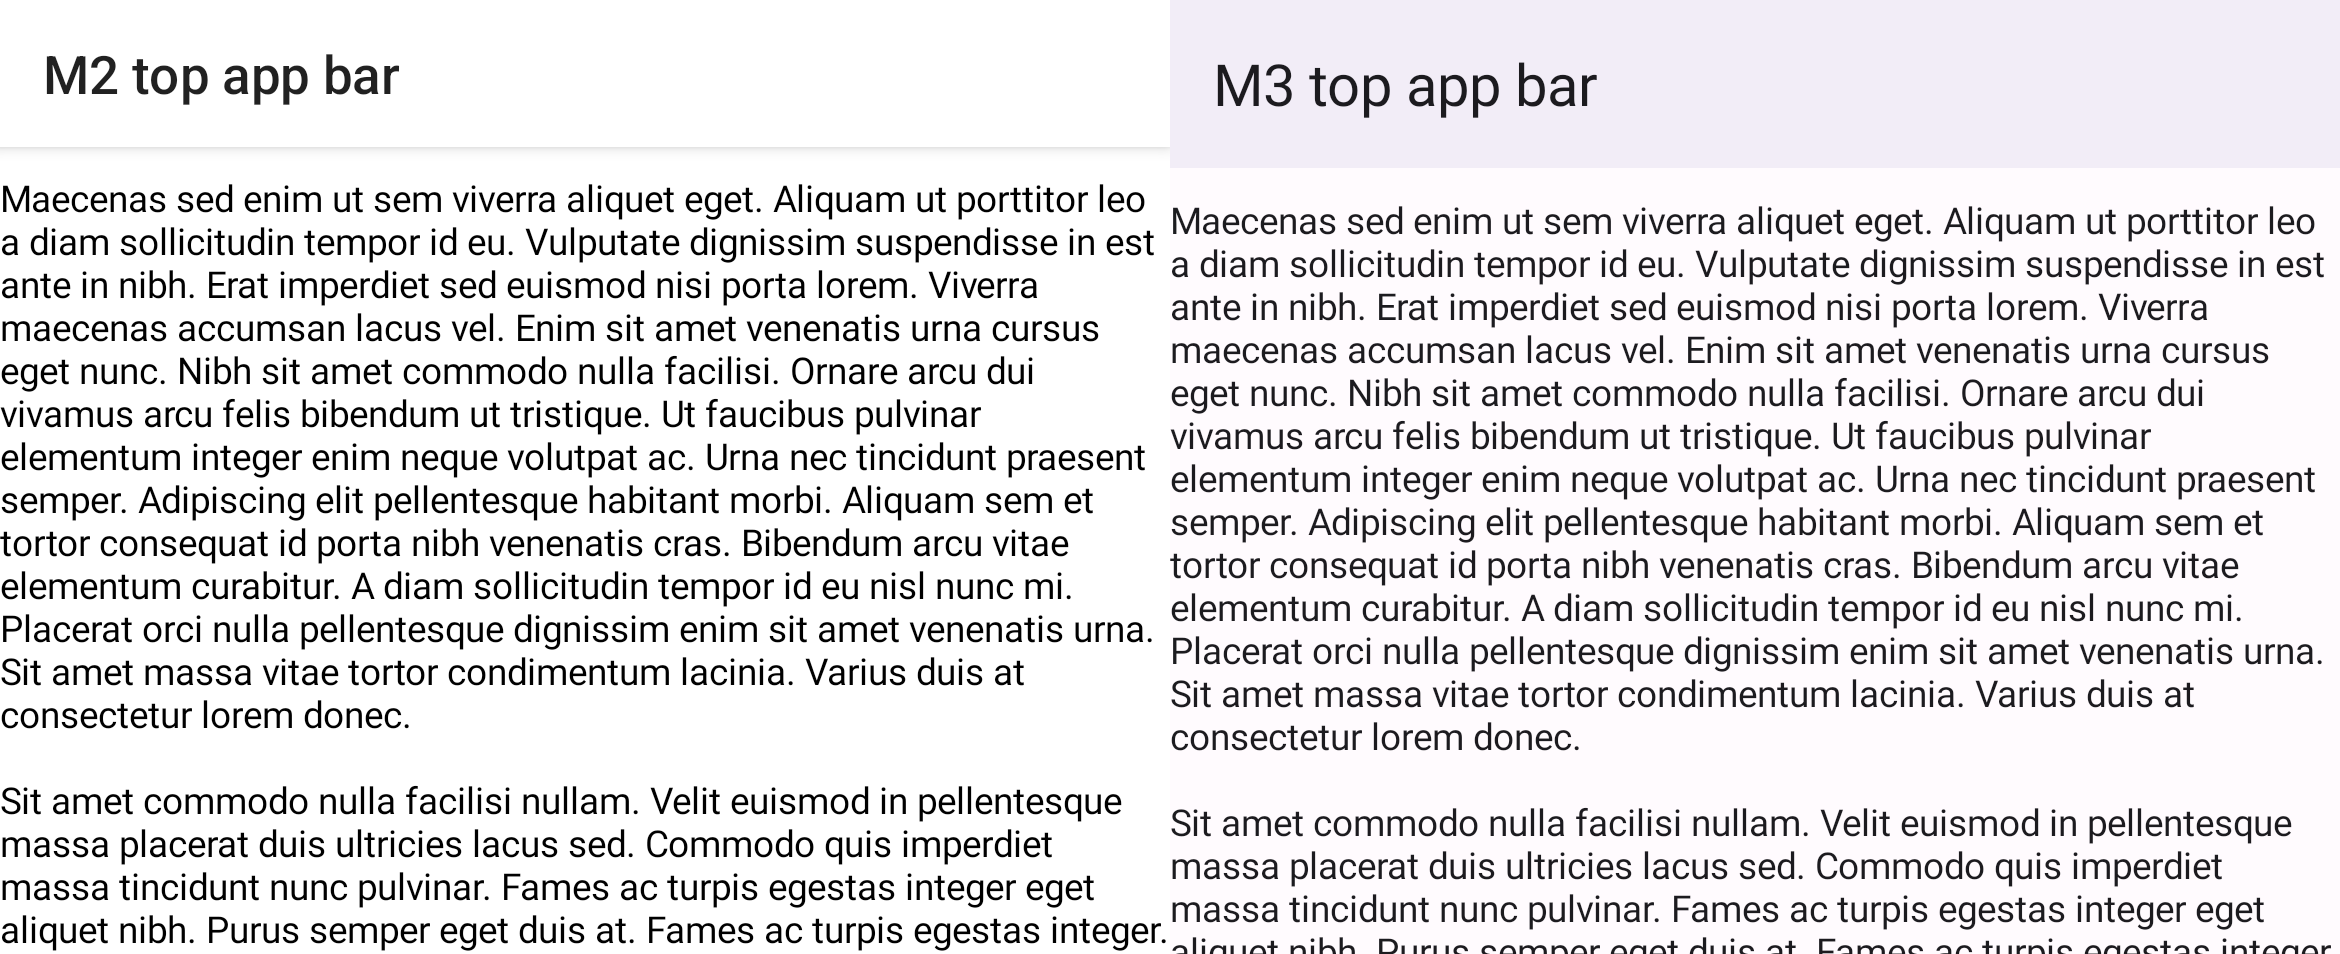 Comparación entre el andamiaje con una barra superior de la app y una lista desplazada de M2 y M3